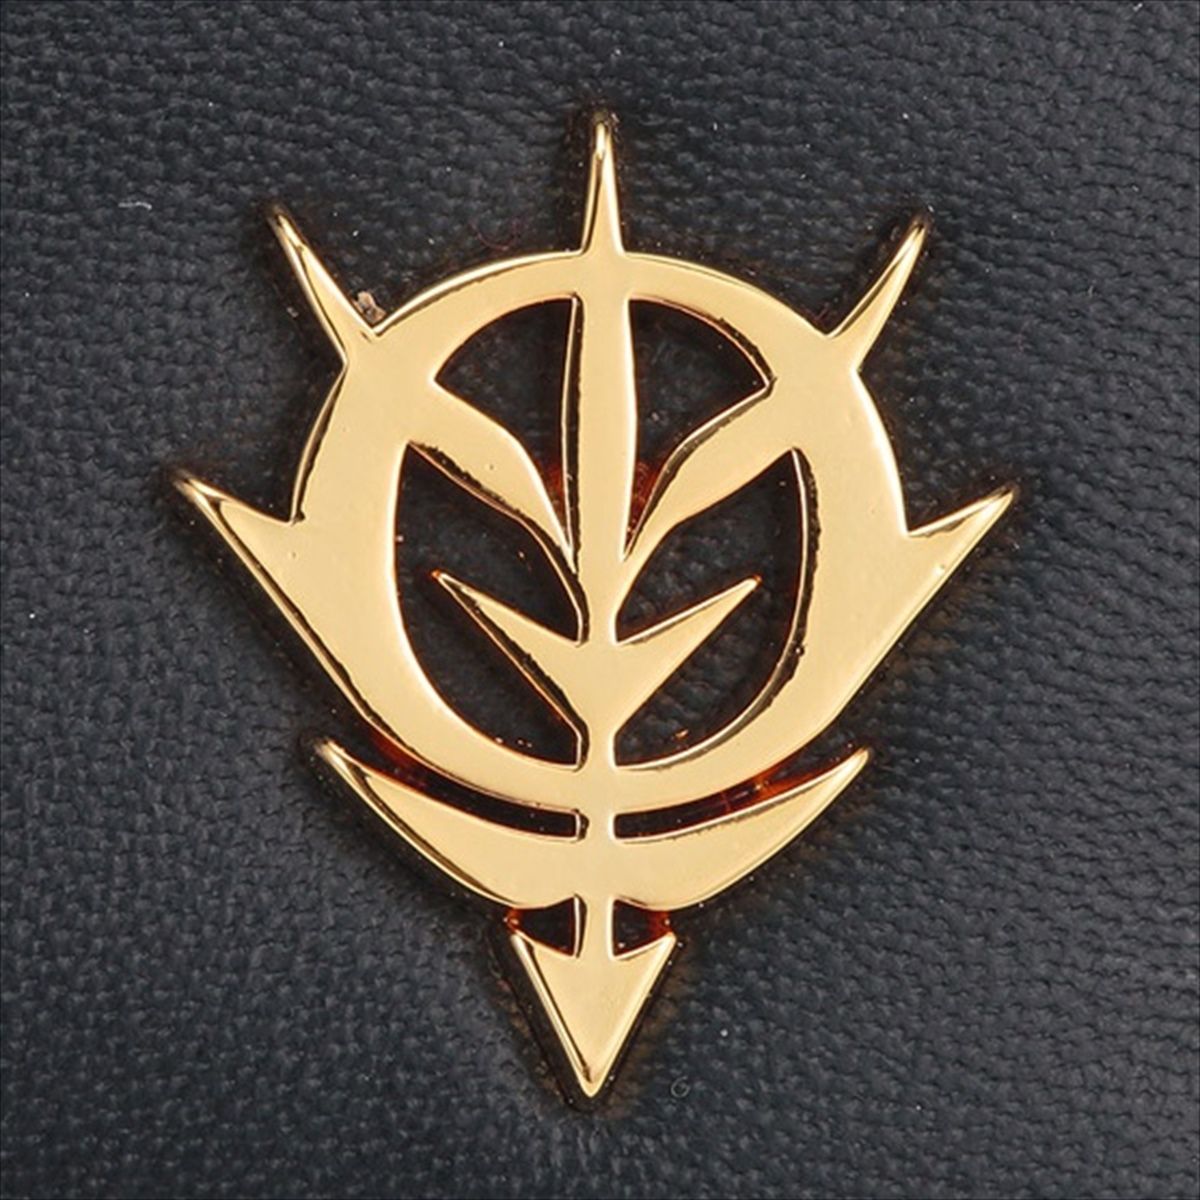 Mobile Suit Gundam Zeon Golden Emblem Key Case